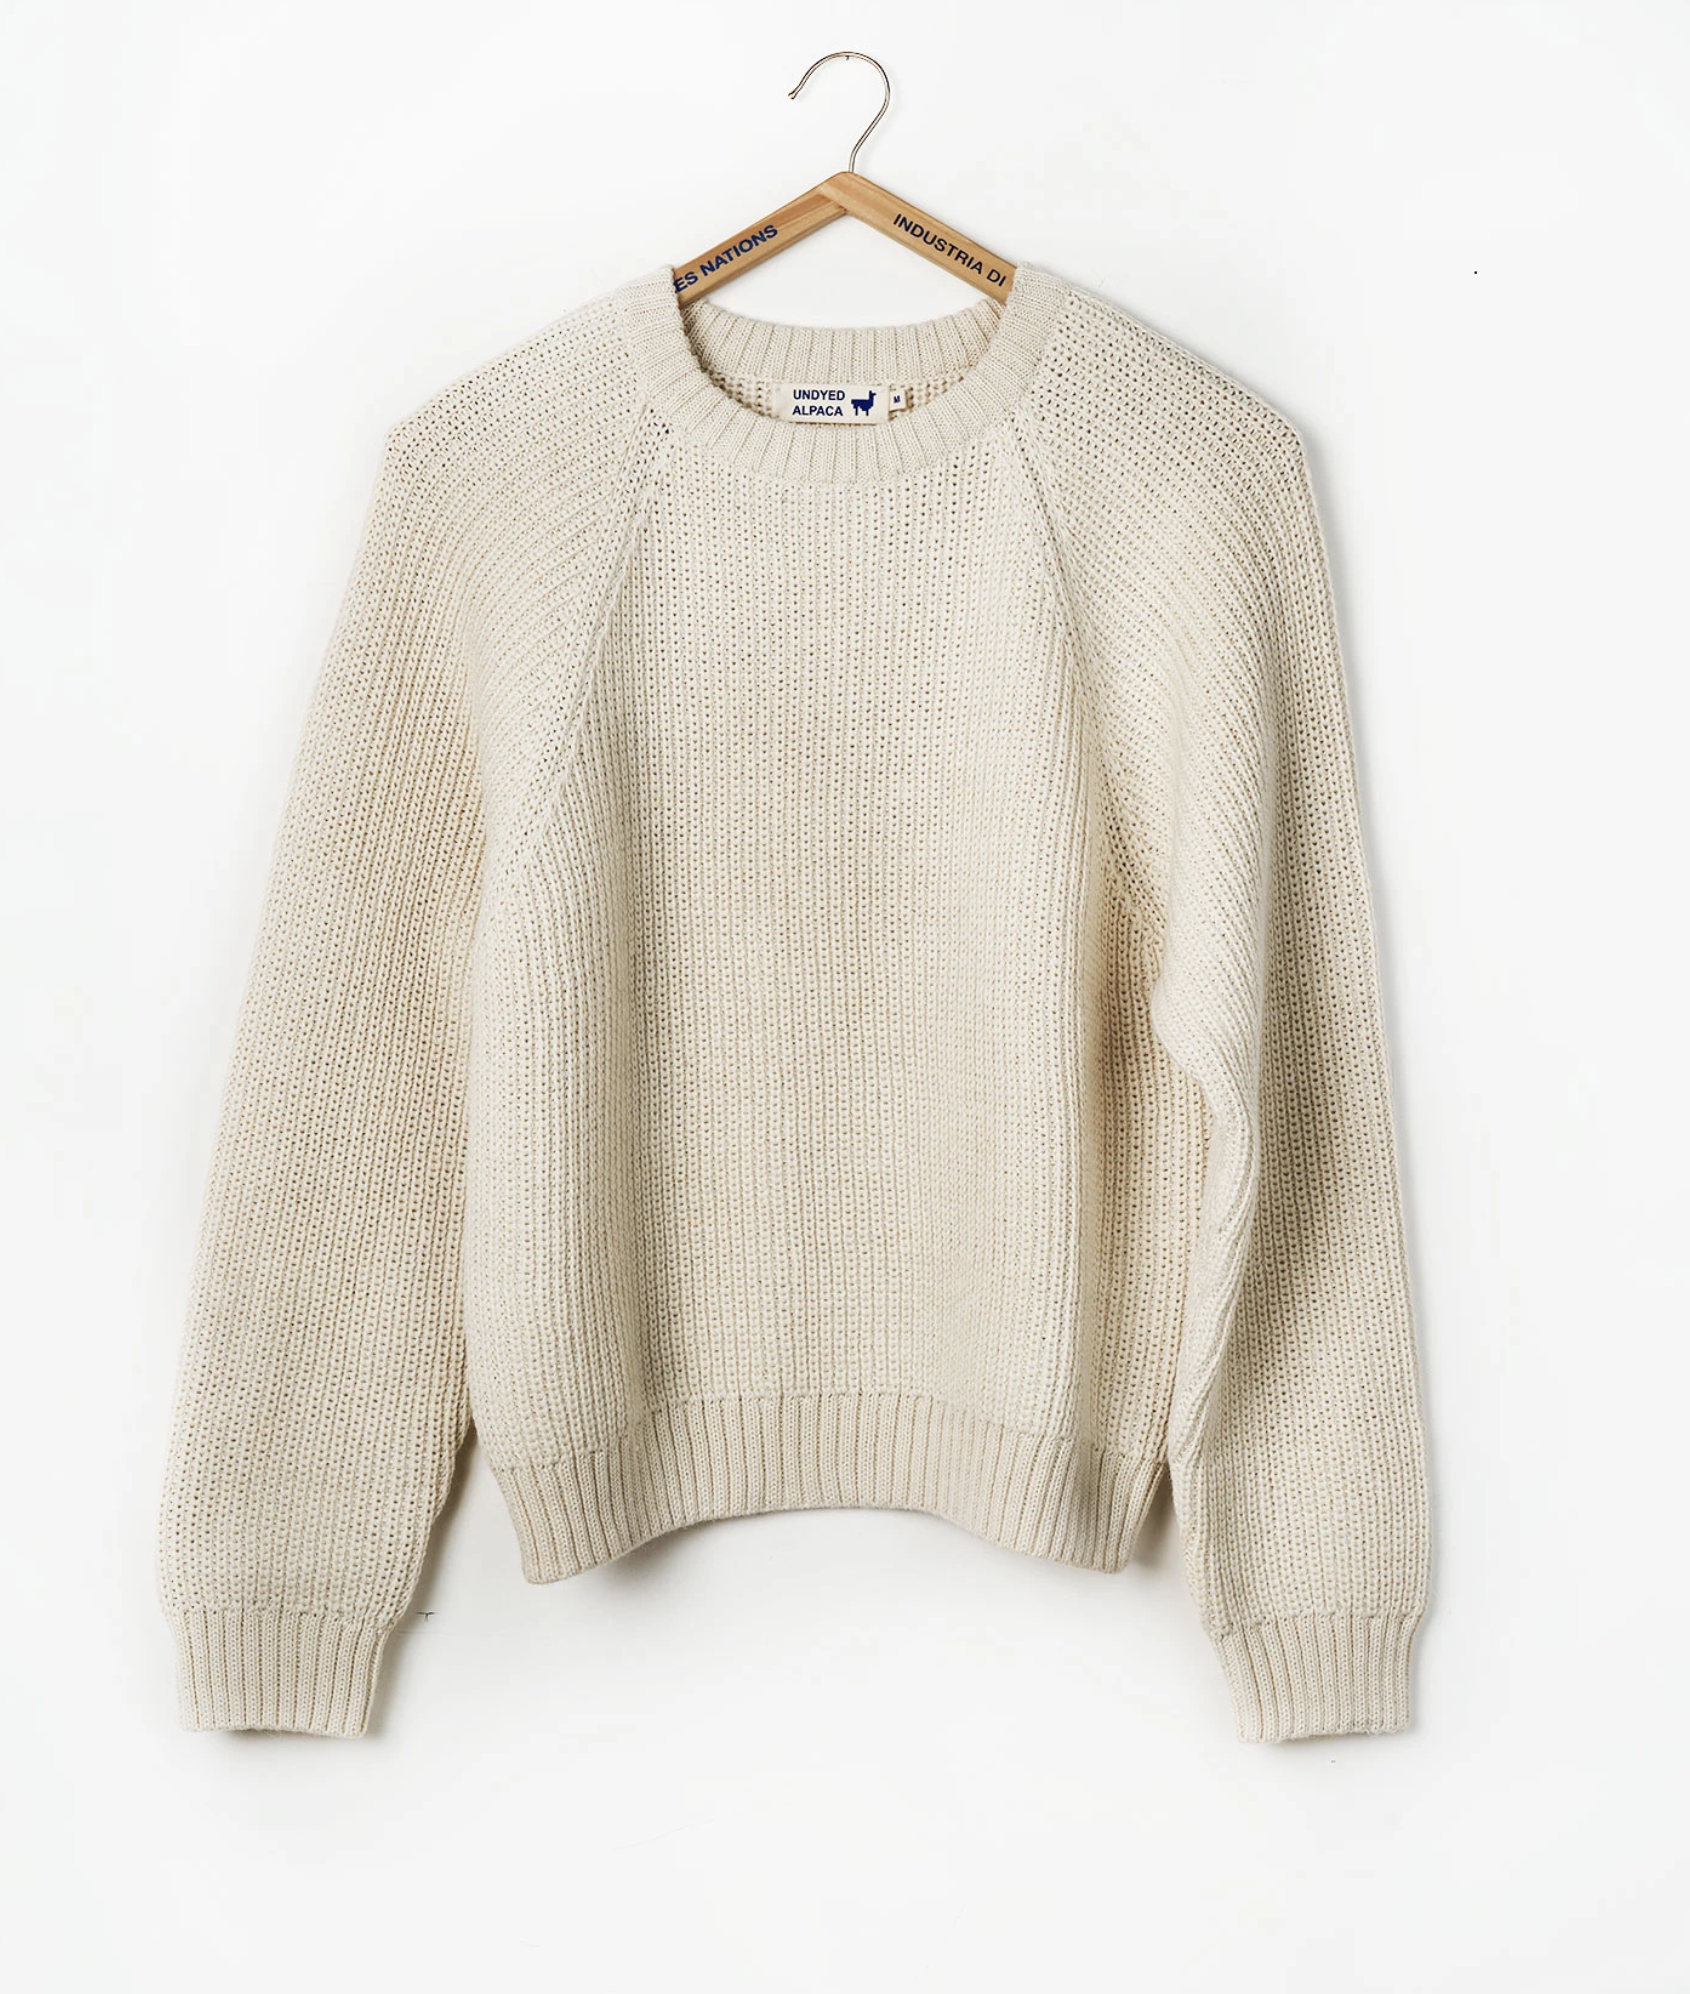 Alpaca Sweater $285